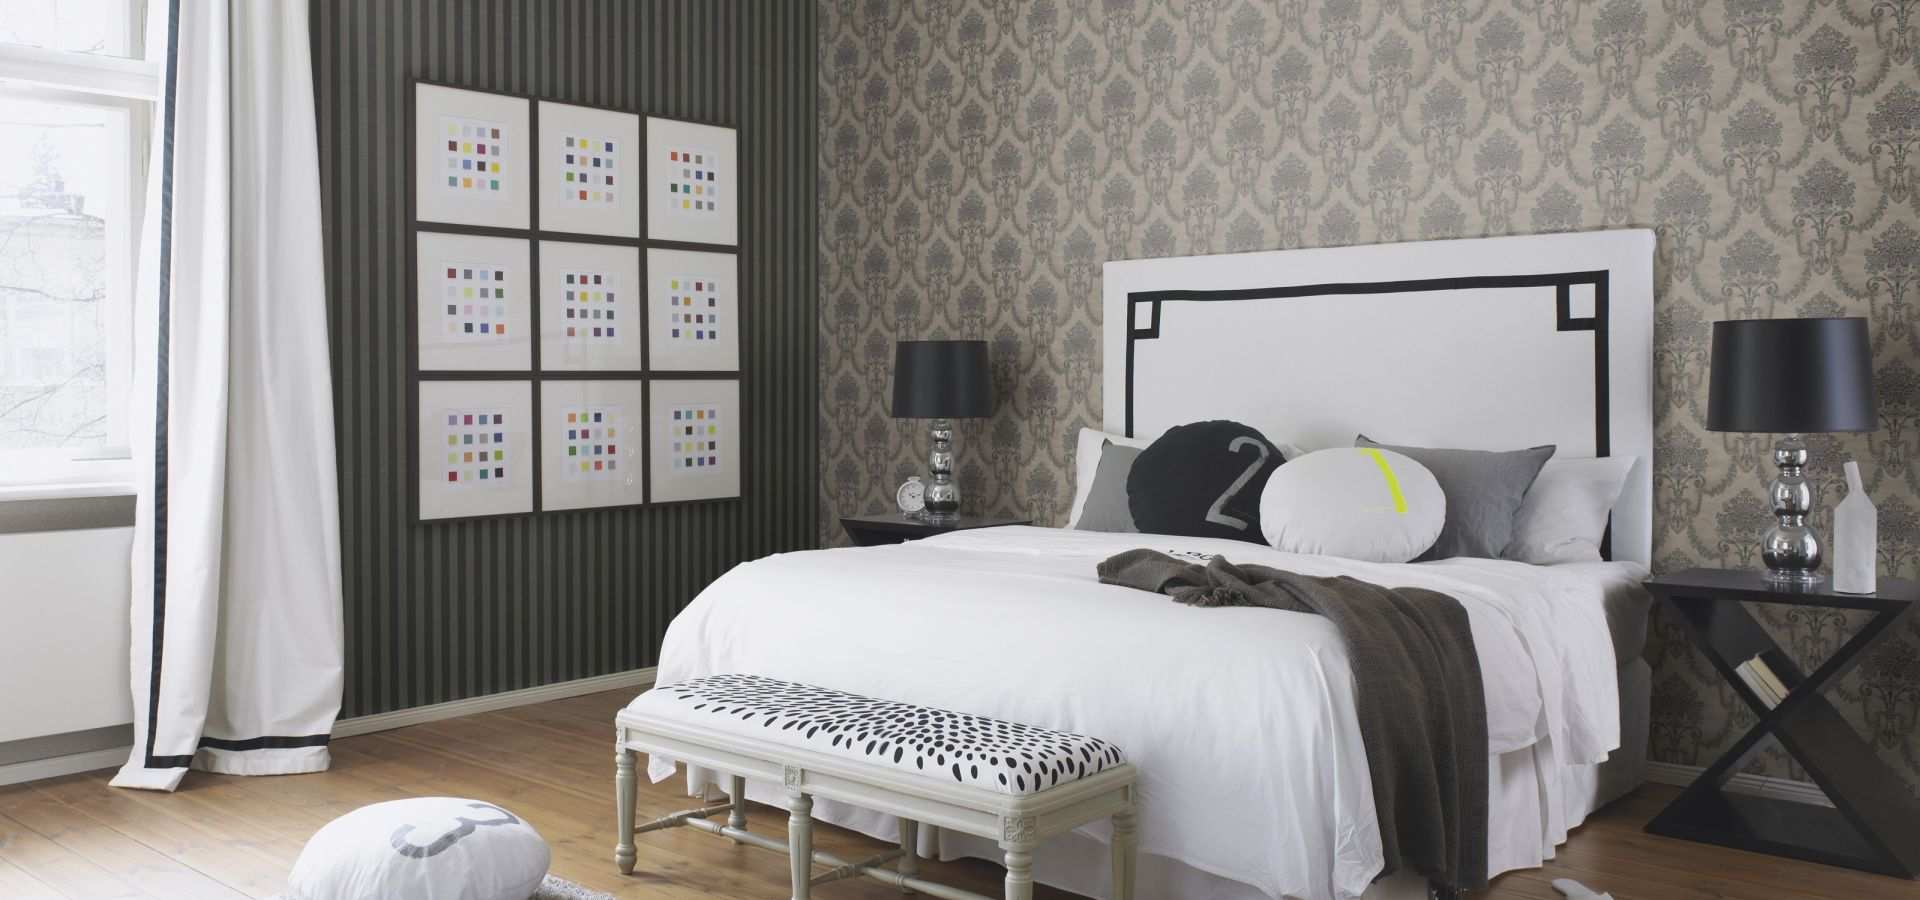 Bild Schlafzimmer Tapete Ornament & Streifen grau